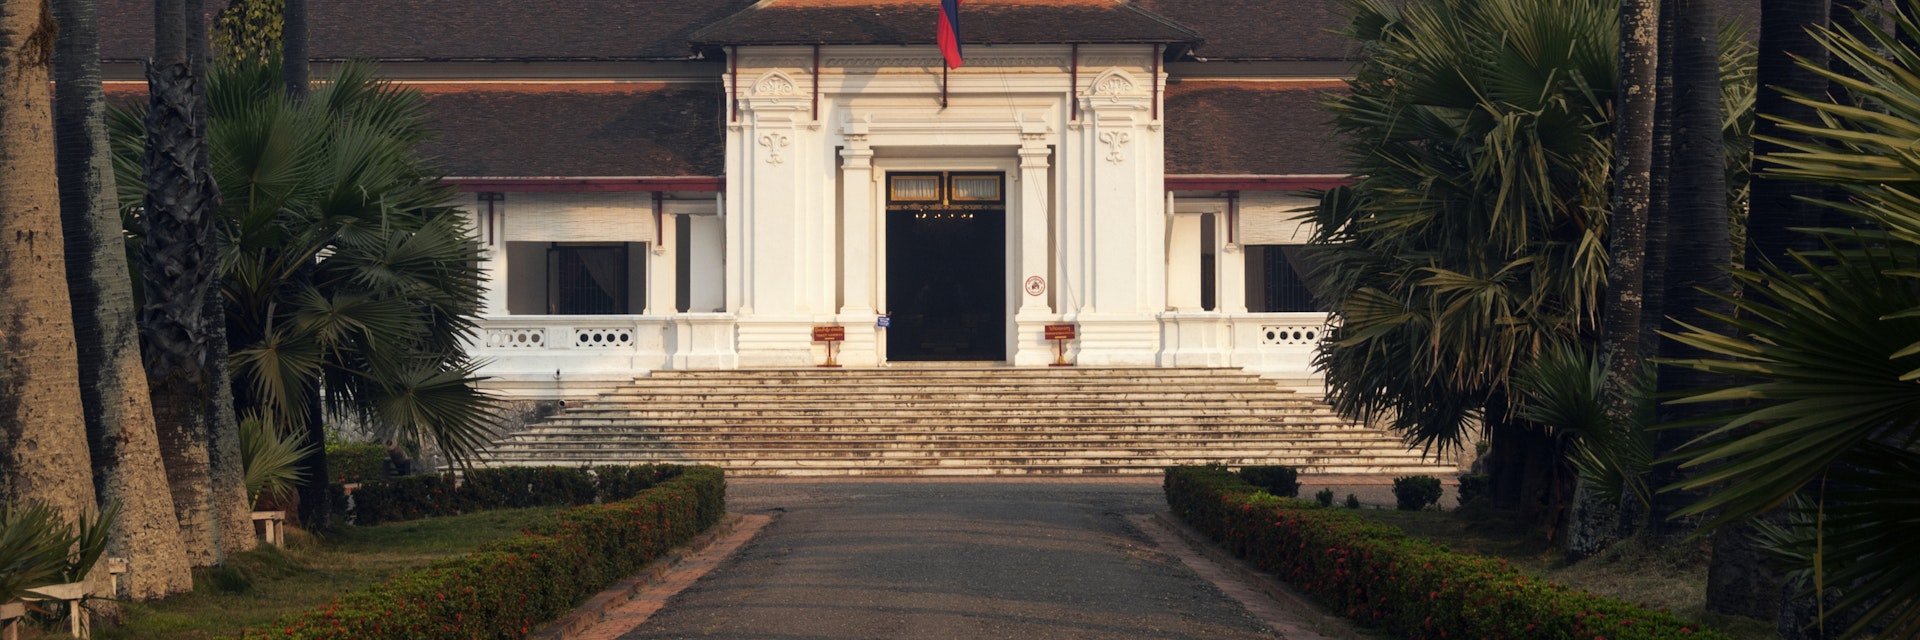 Laos Royal Palace Museum